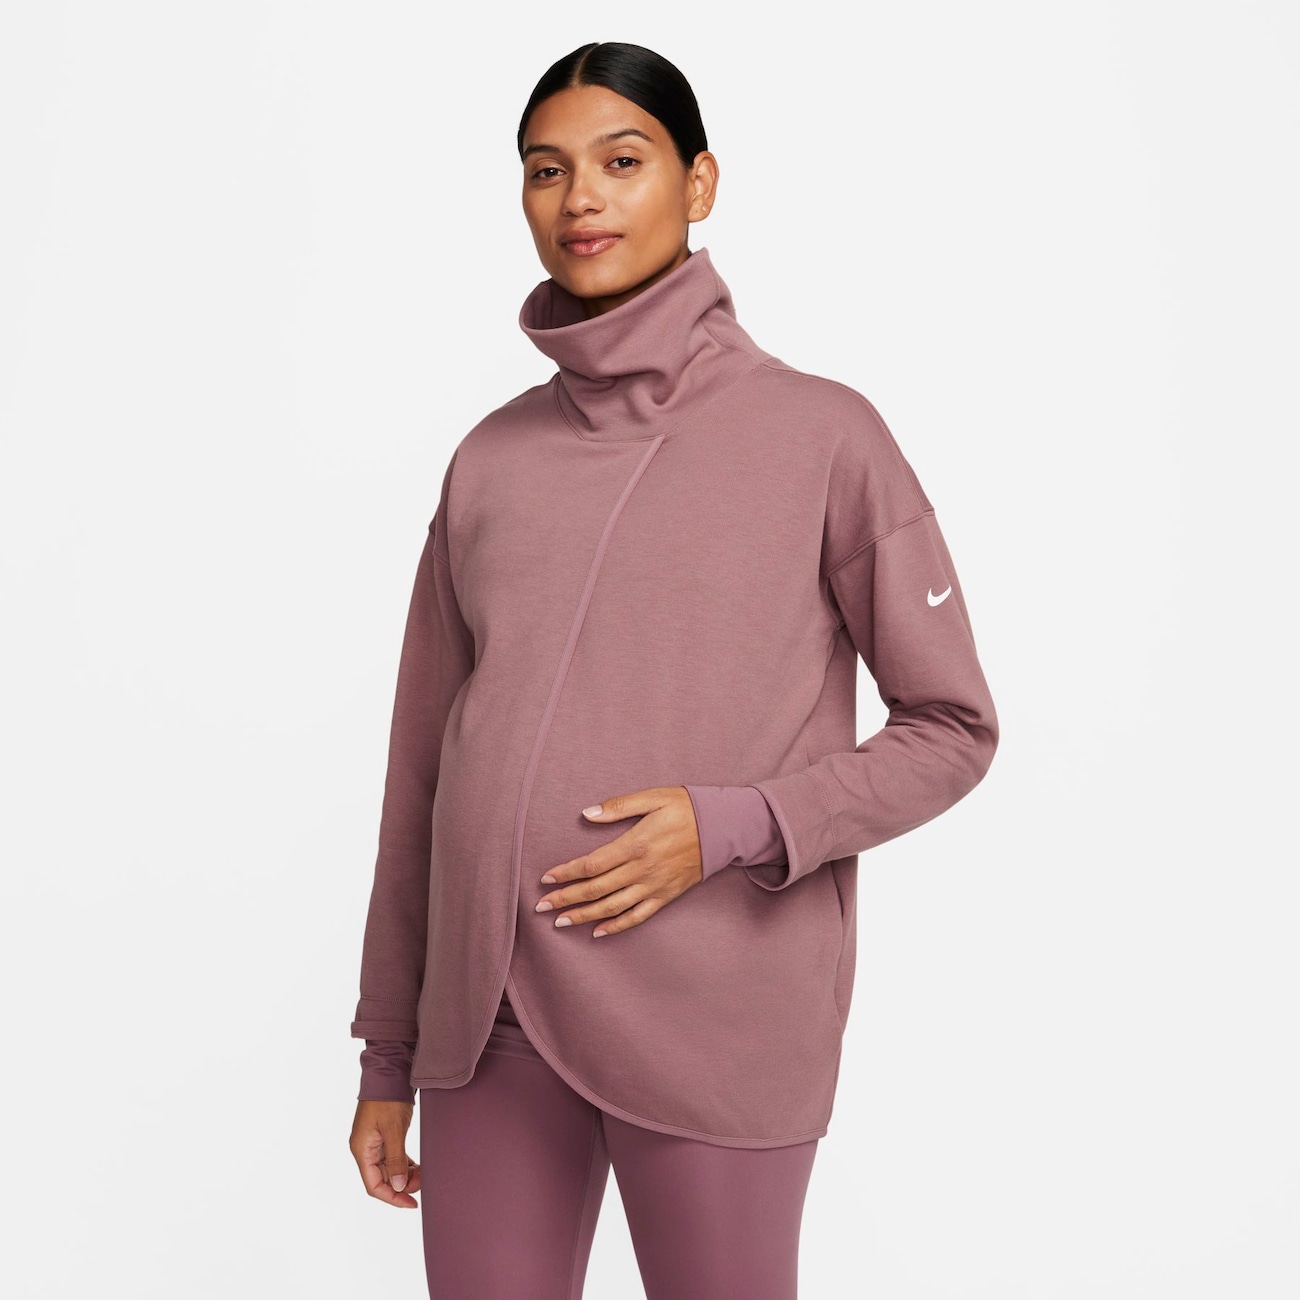 Blusão Nike Maternidade Feminino